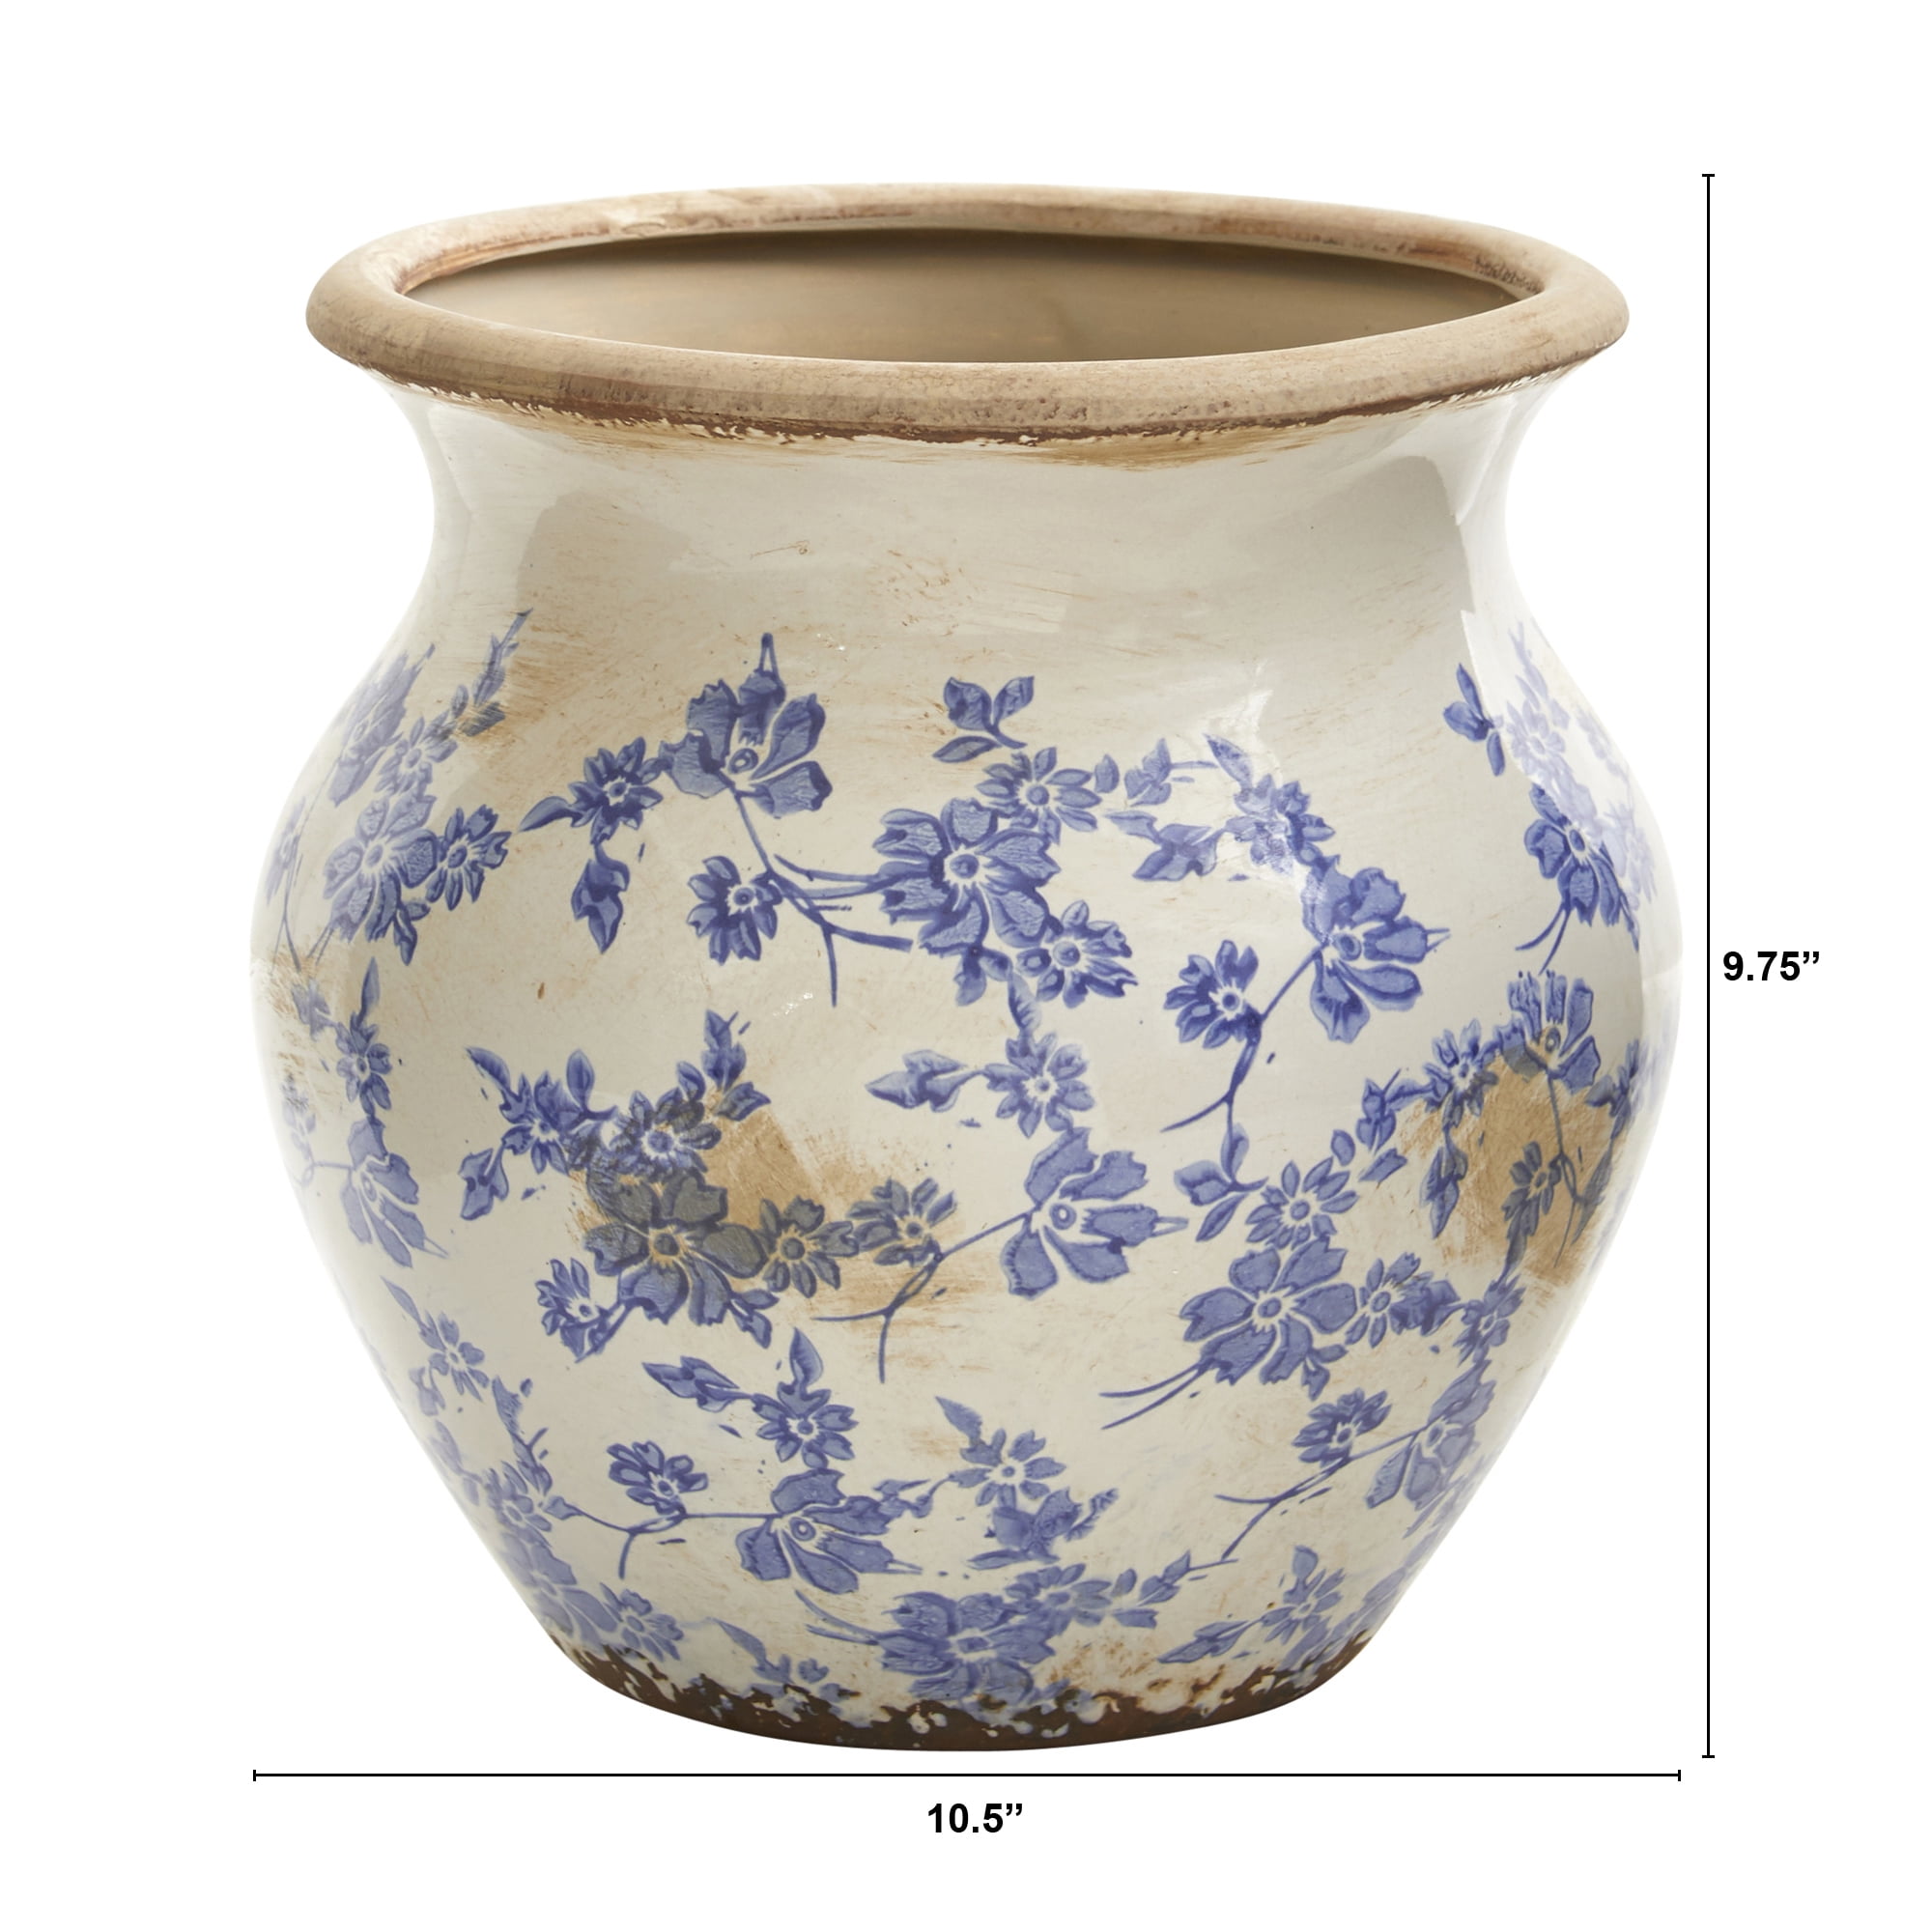 NEW STUNNING BLUE WHITE SCROLL LEAF PRINT TERRACOTTA PEDESTAL Vase ART DECOR 